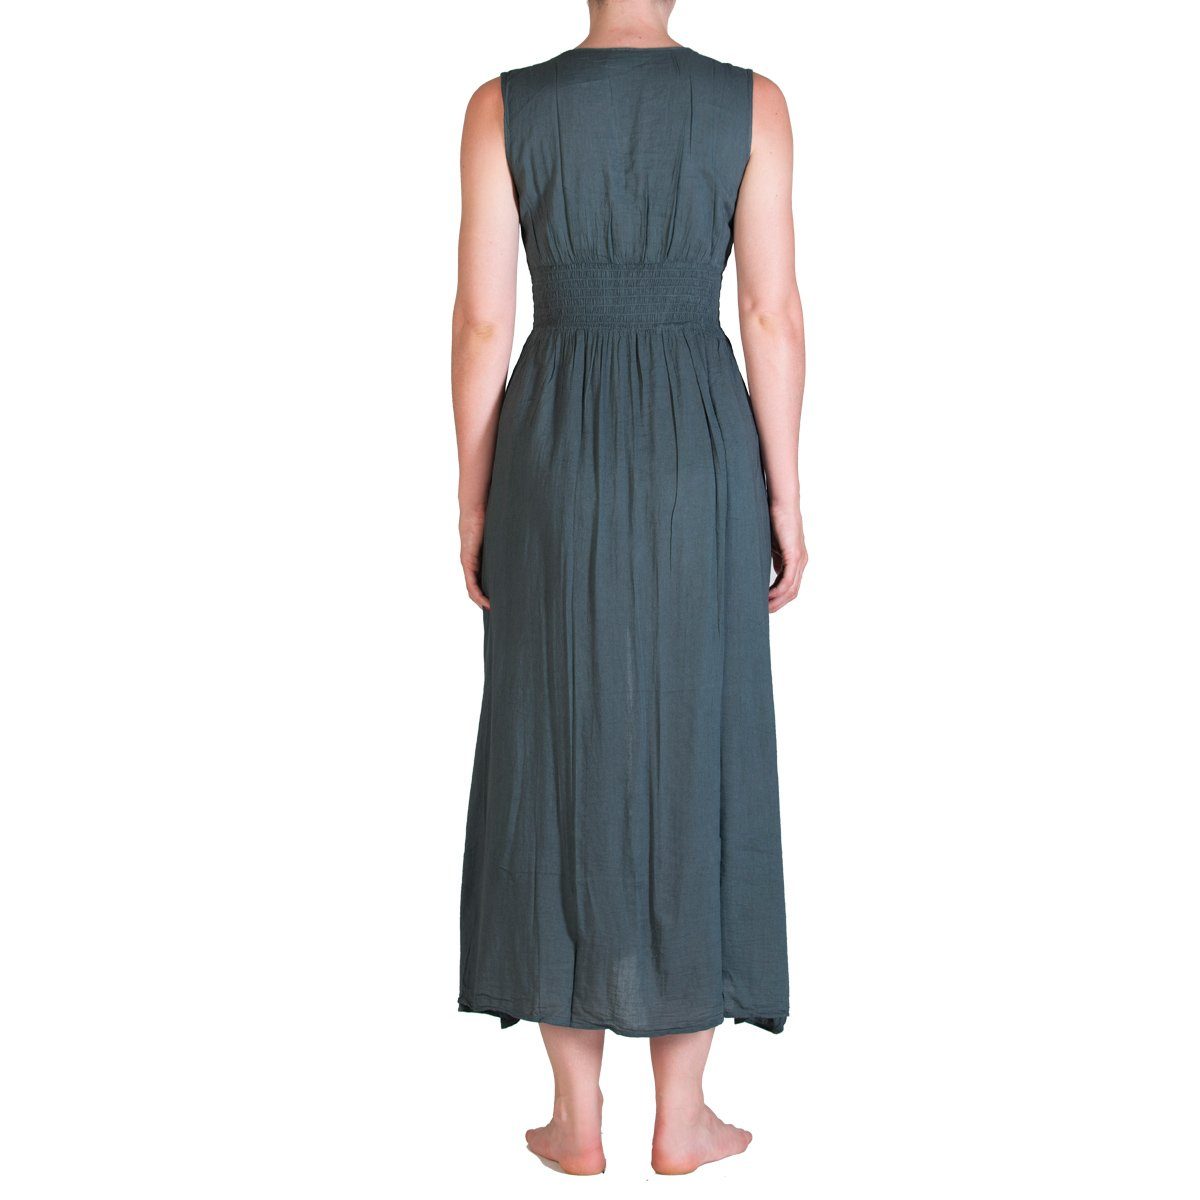 Kleid grau gerafft Baumwolle S Tunikakleid Langes Sommerkleid einfarbiges Rücken im Langes PANASIAM 002 aus auch gesmoked Onesize M und feiner Strandkleid Gr. als